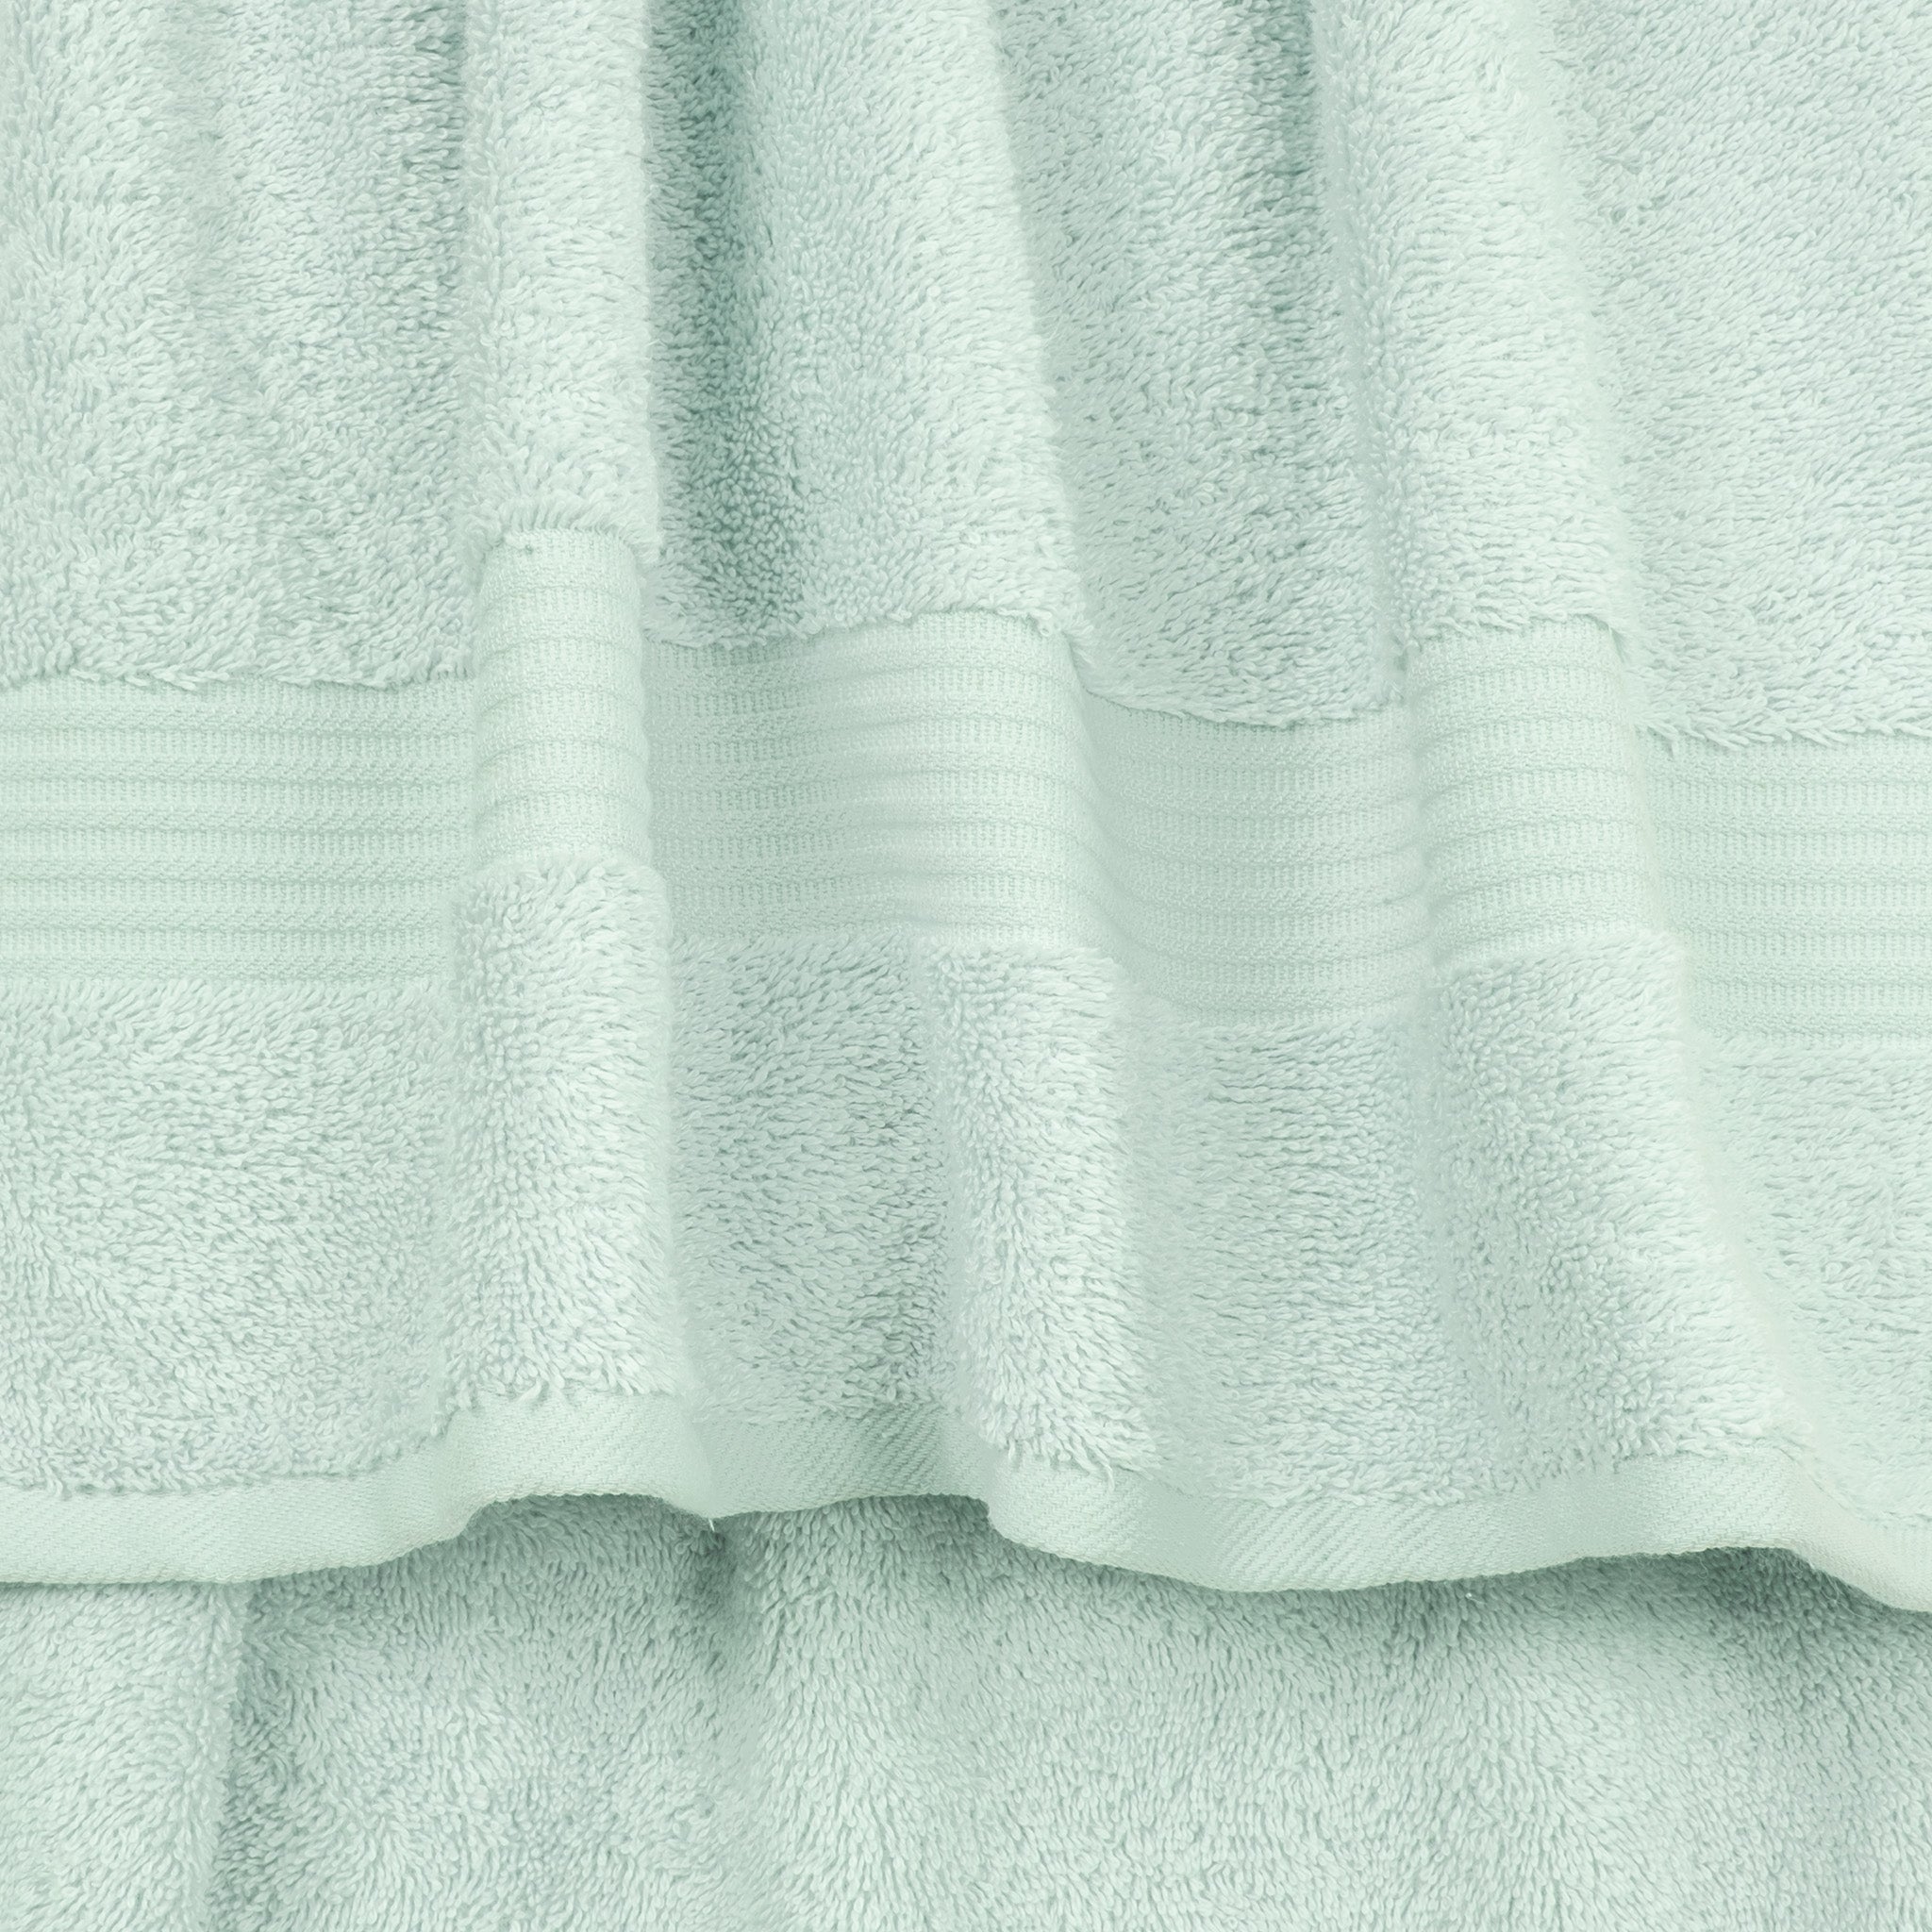 American Soft Linen Bekos 100% Cotton Turkish Towels 6 Piece Bath Towel Set -mint-03